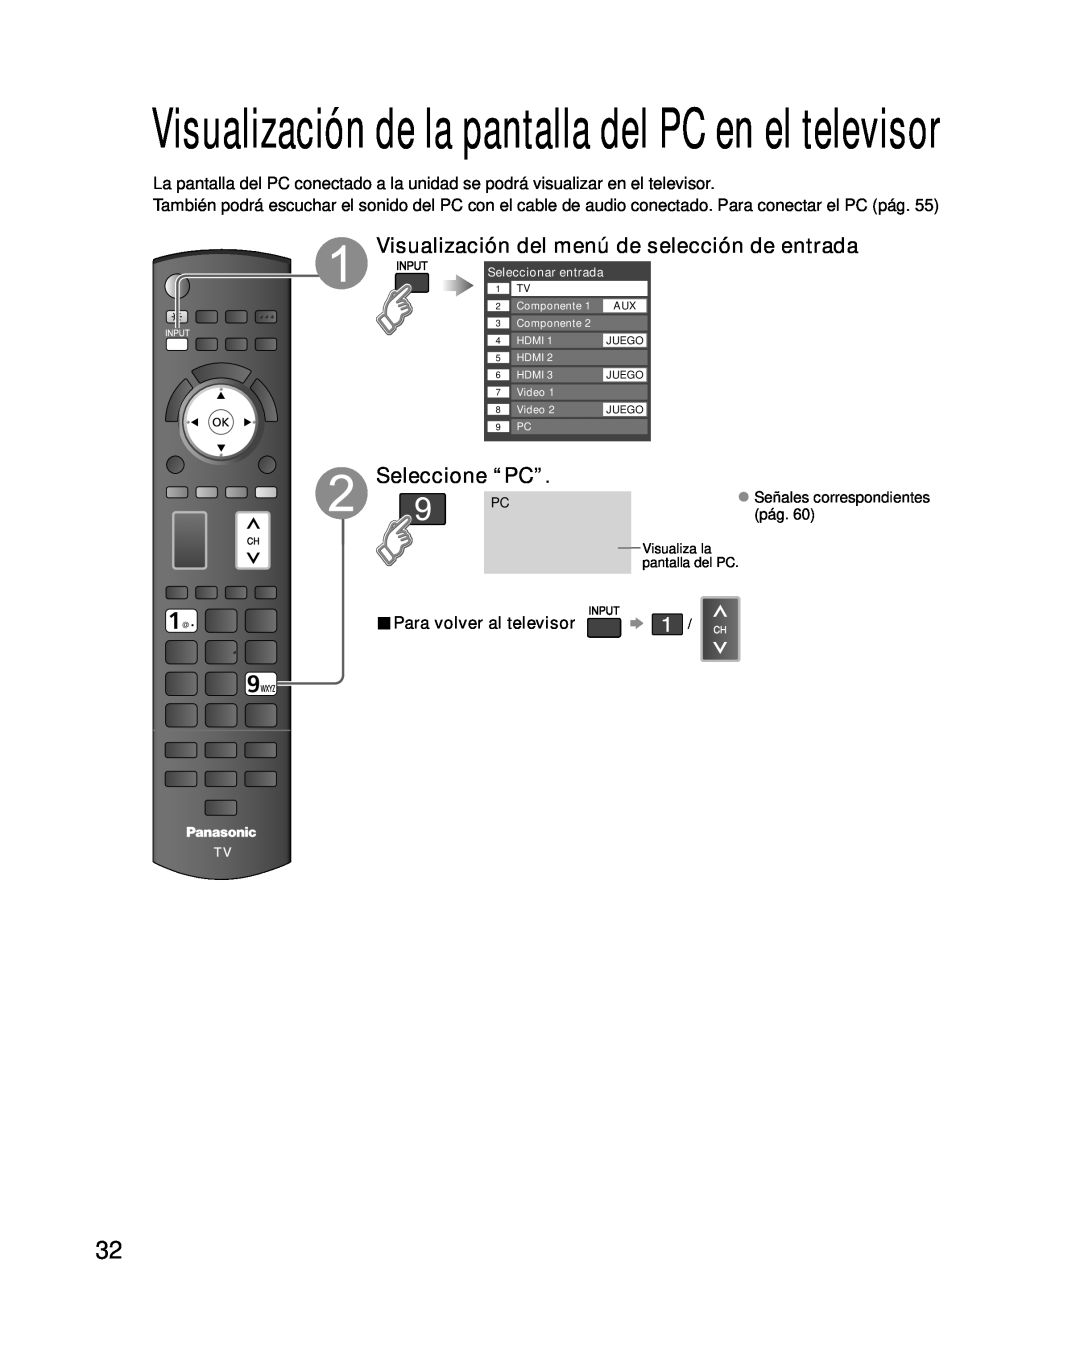 Panasonic TC-P46G10 Seleccione “PC”, Para volver al televisor, Visualización de la pantalla del PC en el televisor 